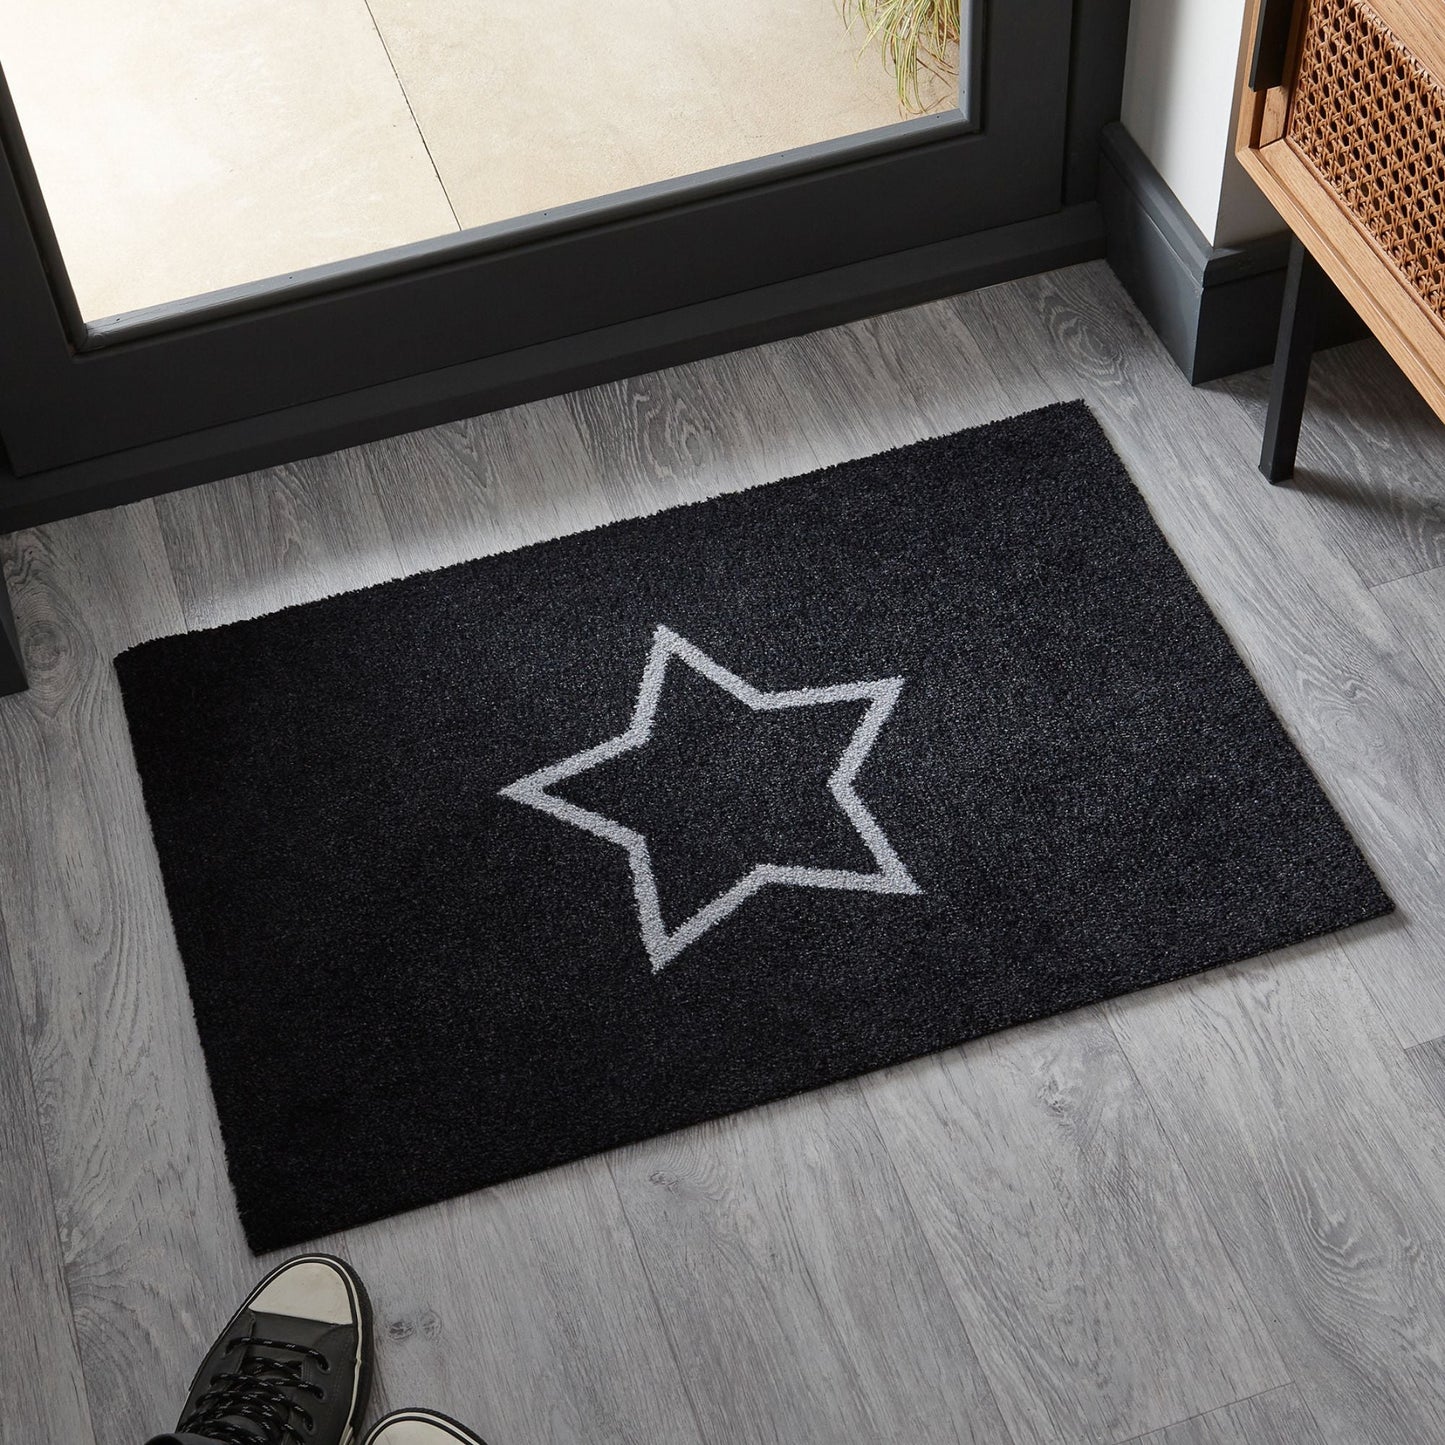 Star Doormat | Navy